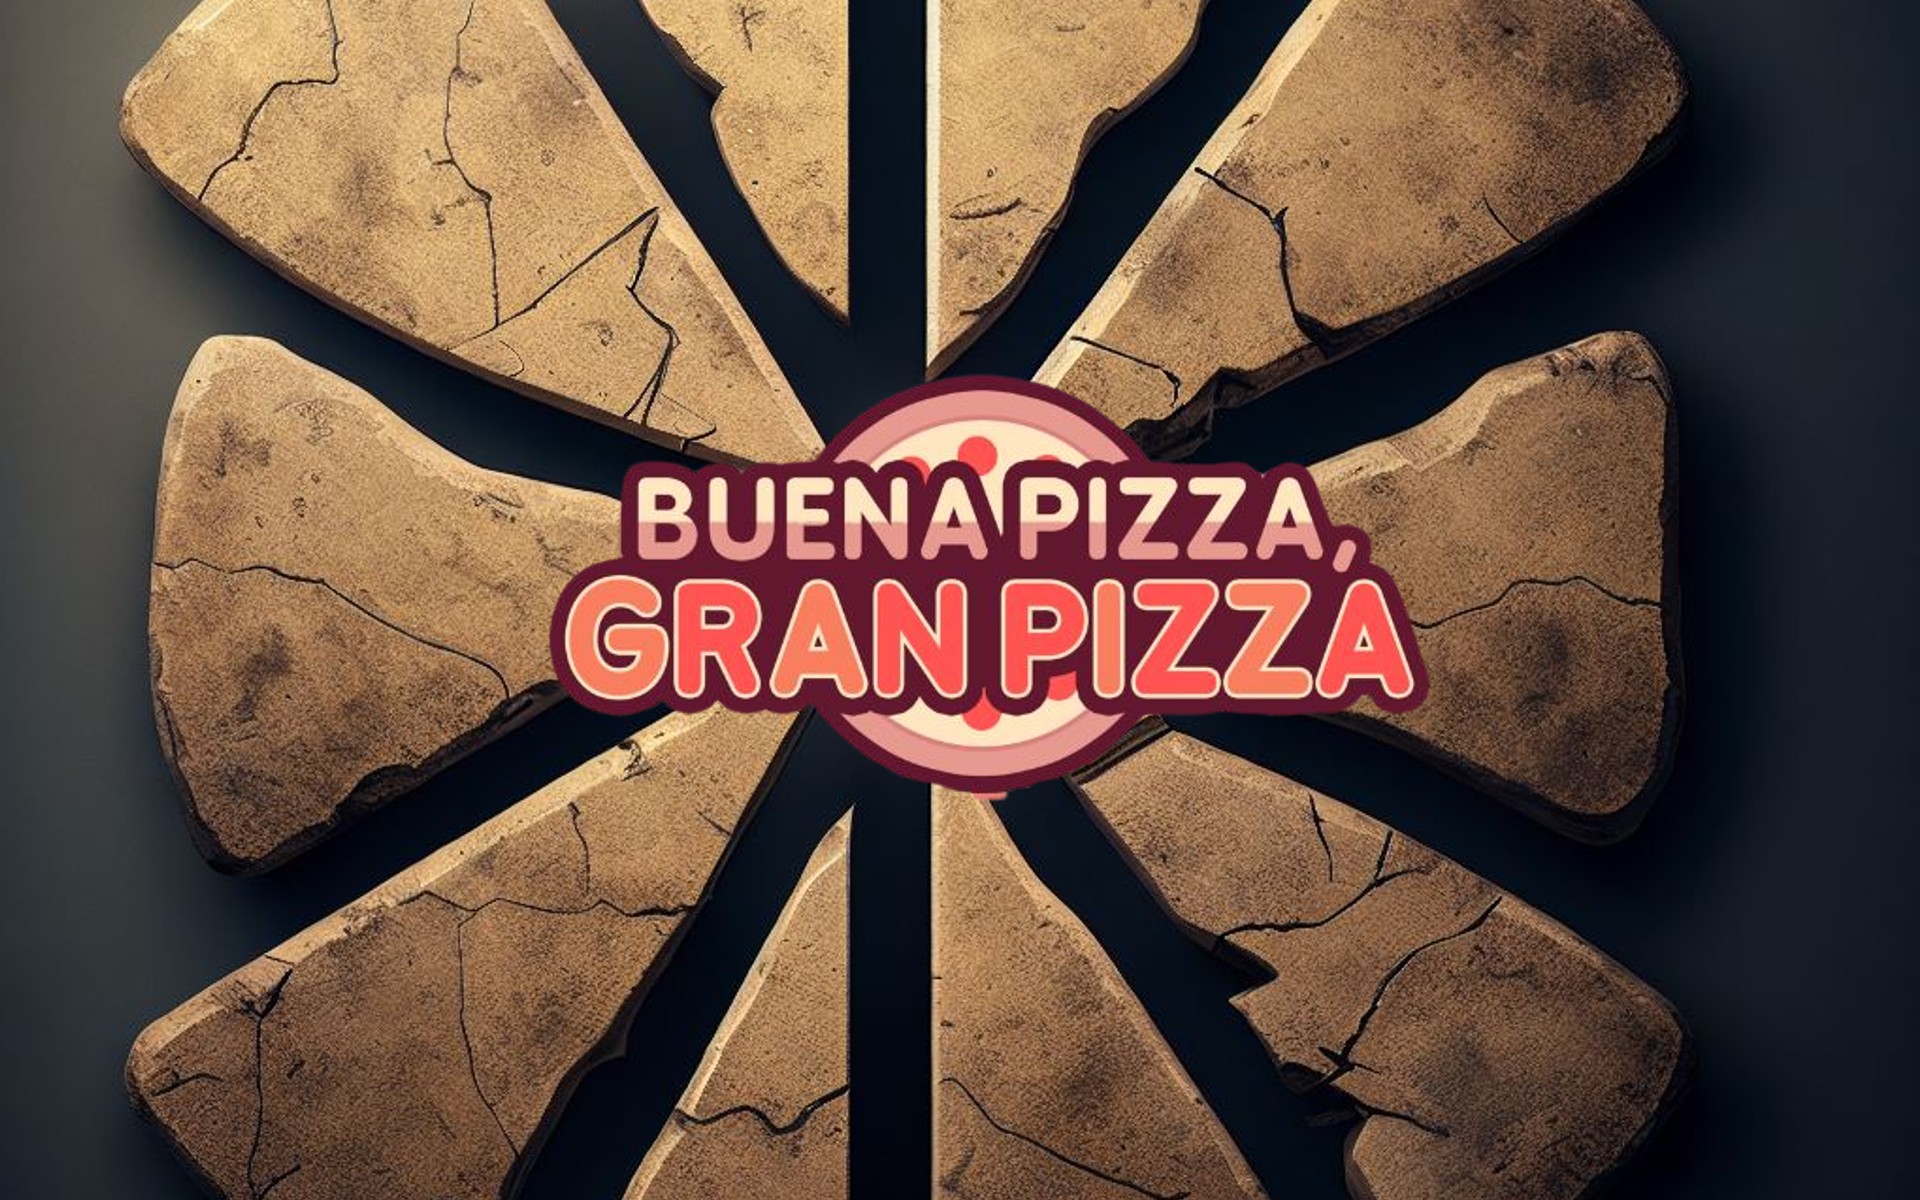 Dónde encontrar las piezas de la tablilla antigua de piedra en Buena Pizza Gran Pizza